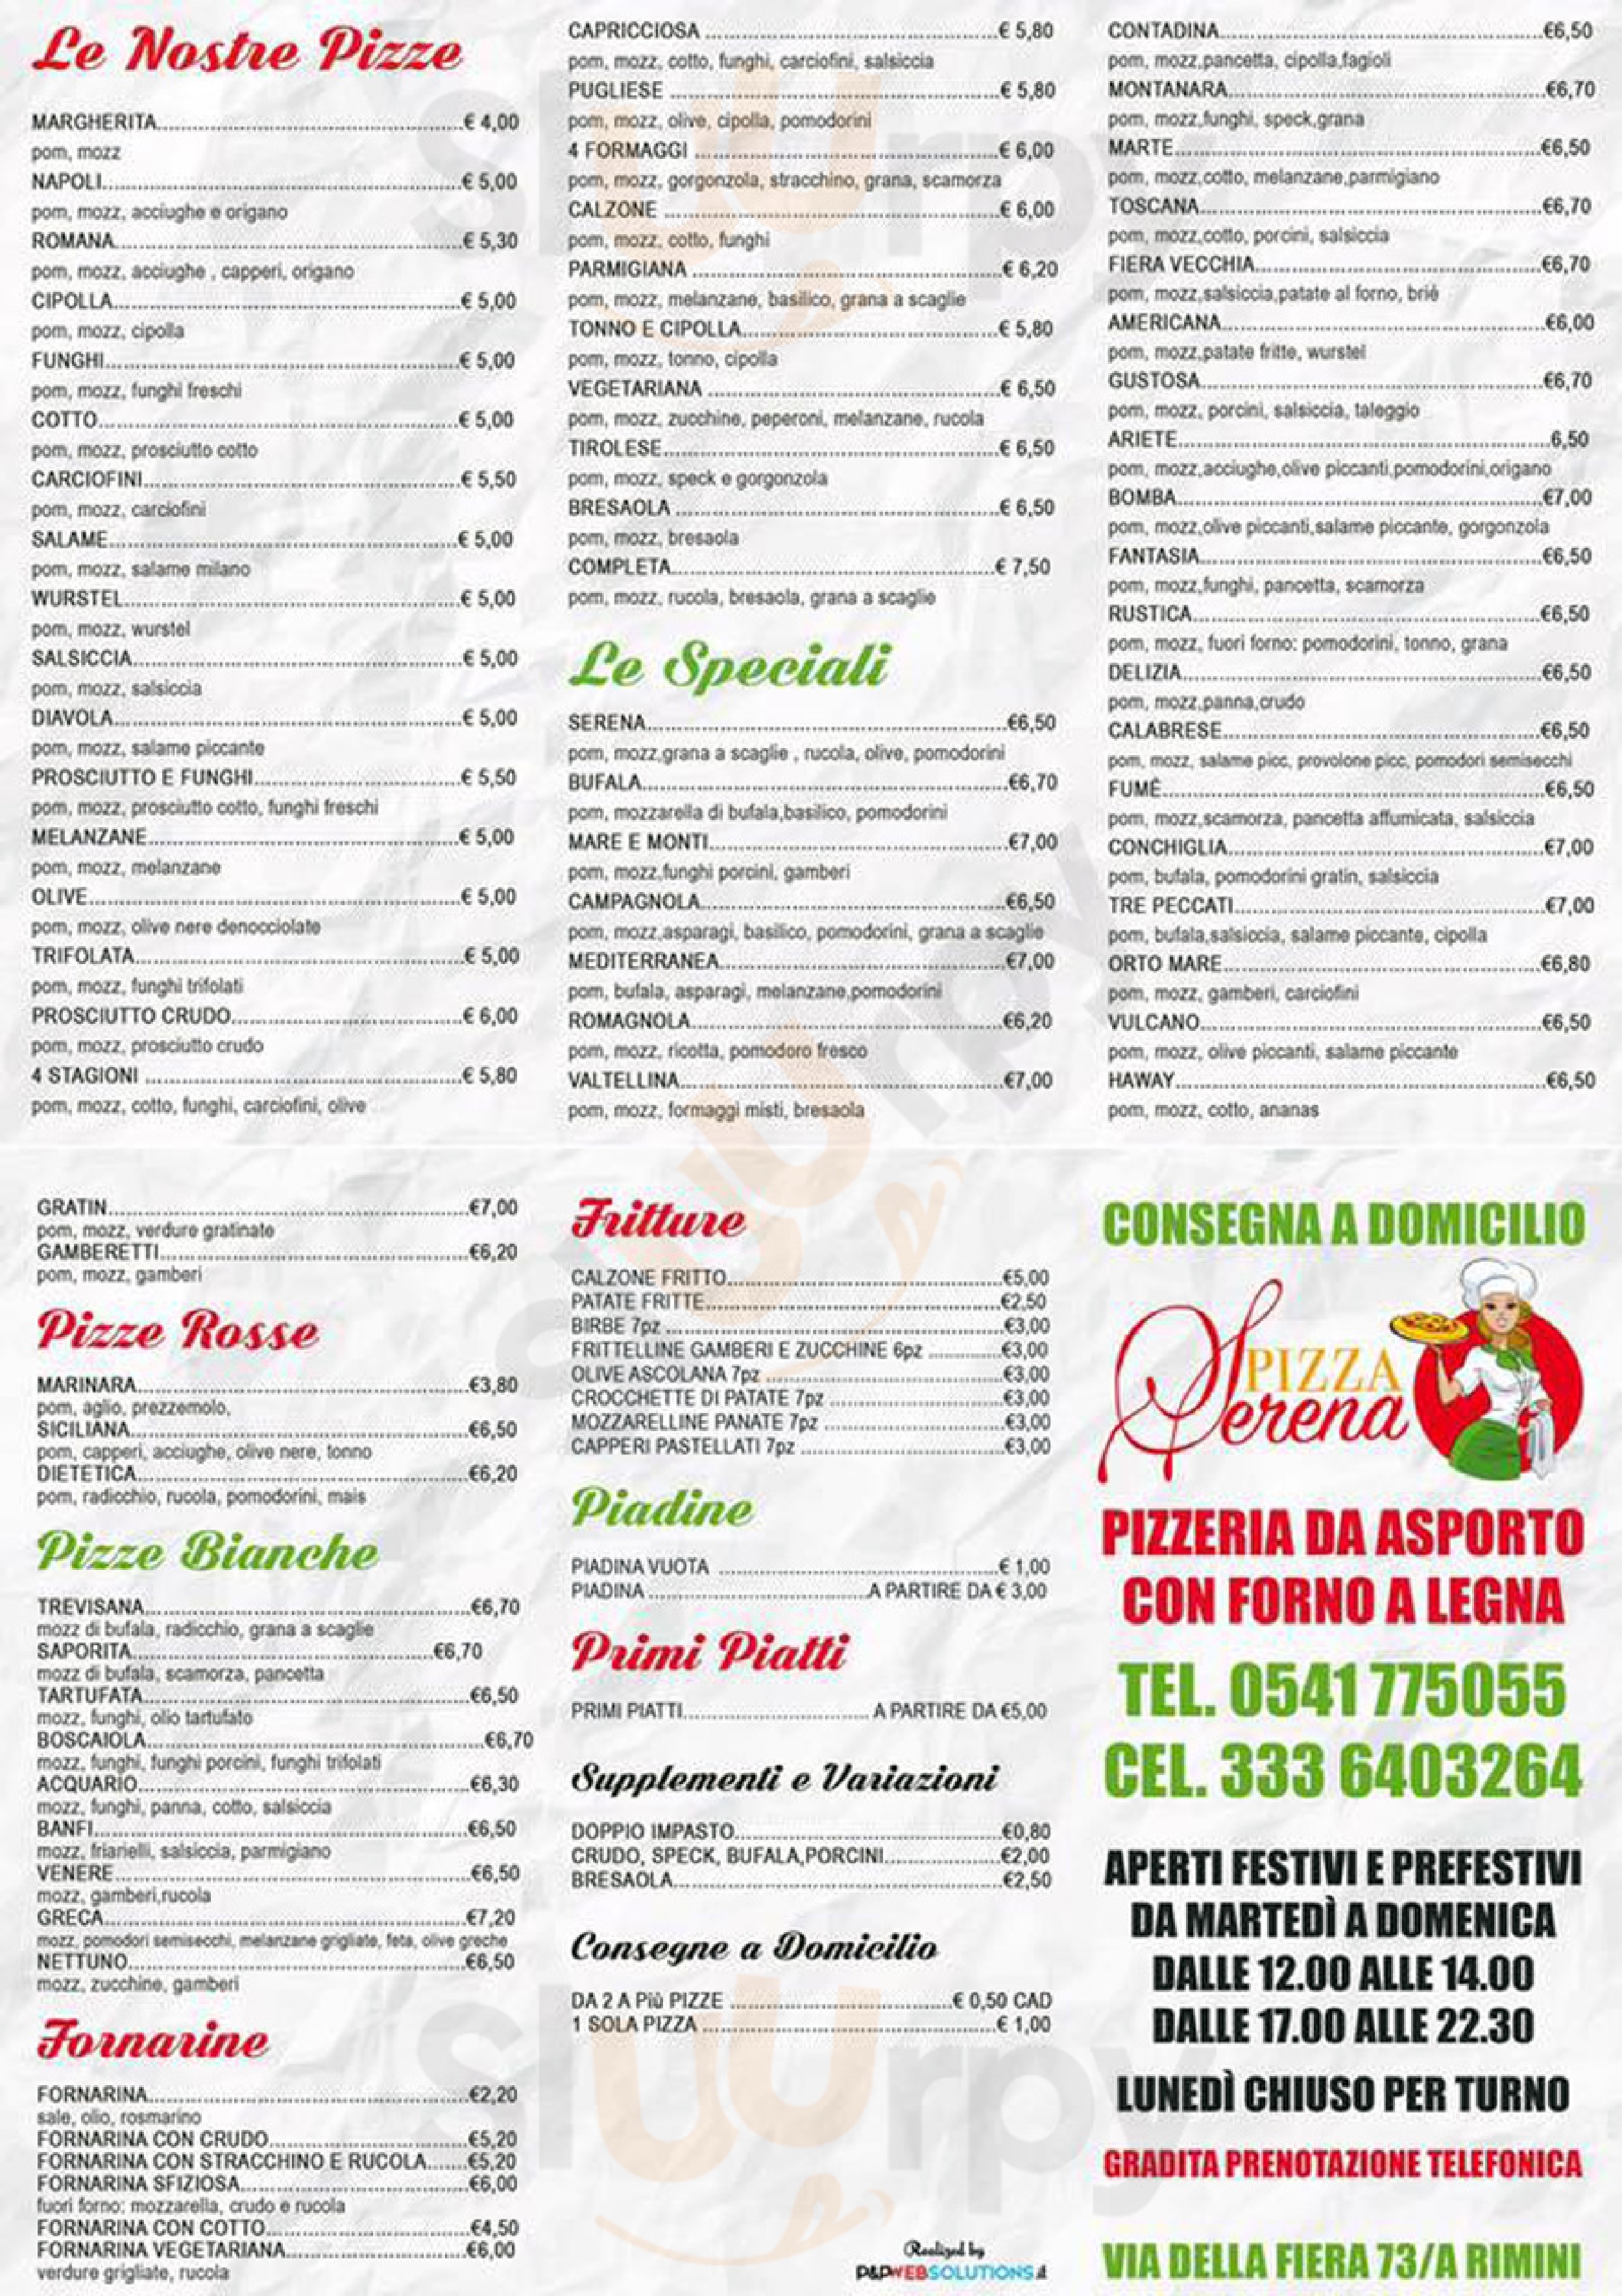 Pizzeria Serena - Gastronomia Piadineria Rimini menù 1 pagina